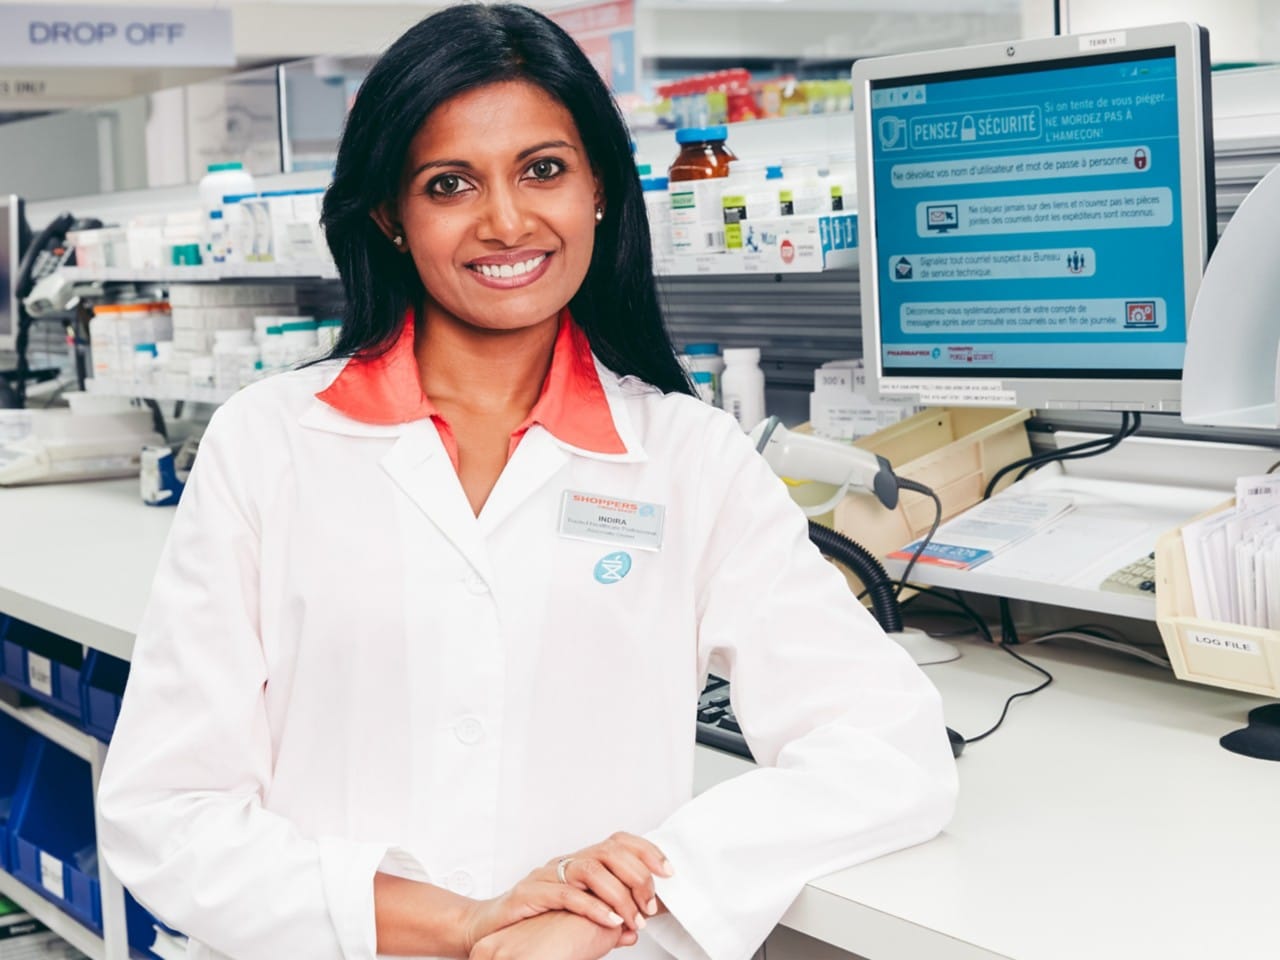 Un pharmacien souriant portant une blouse de laboratoire blanche devant un écran d'ordinateur.